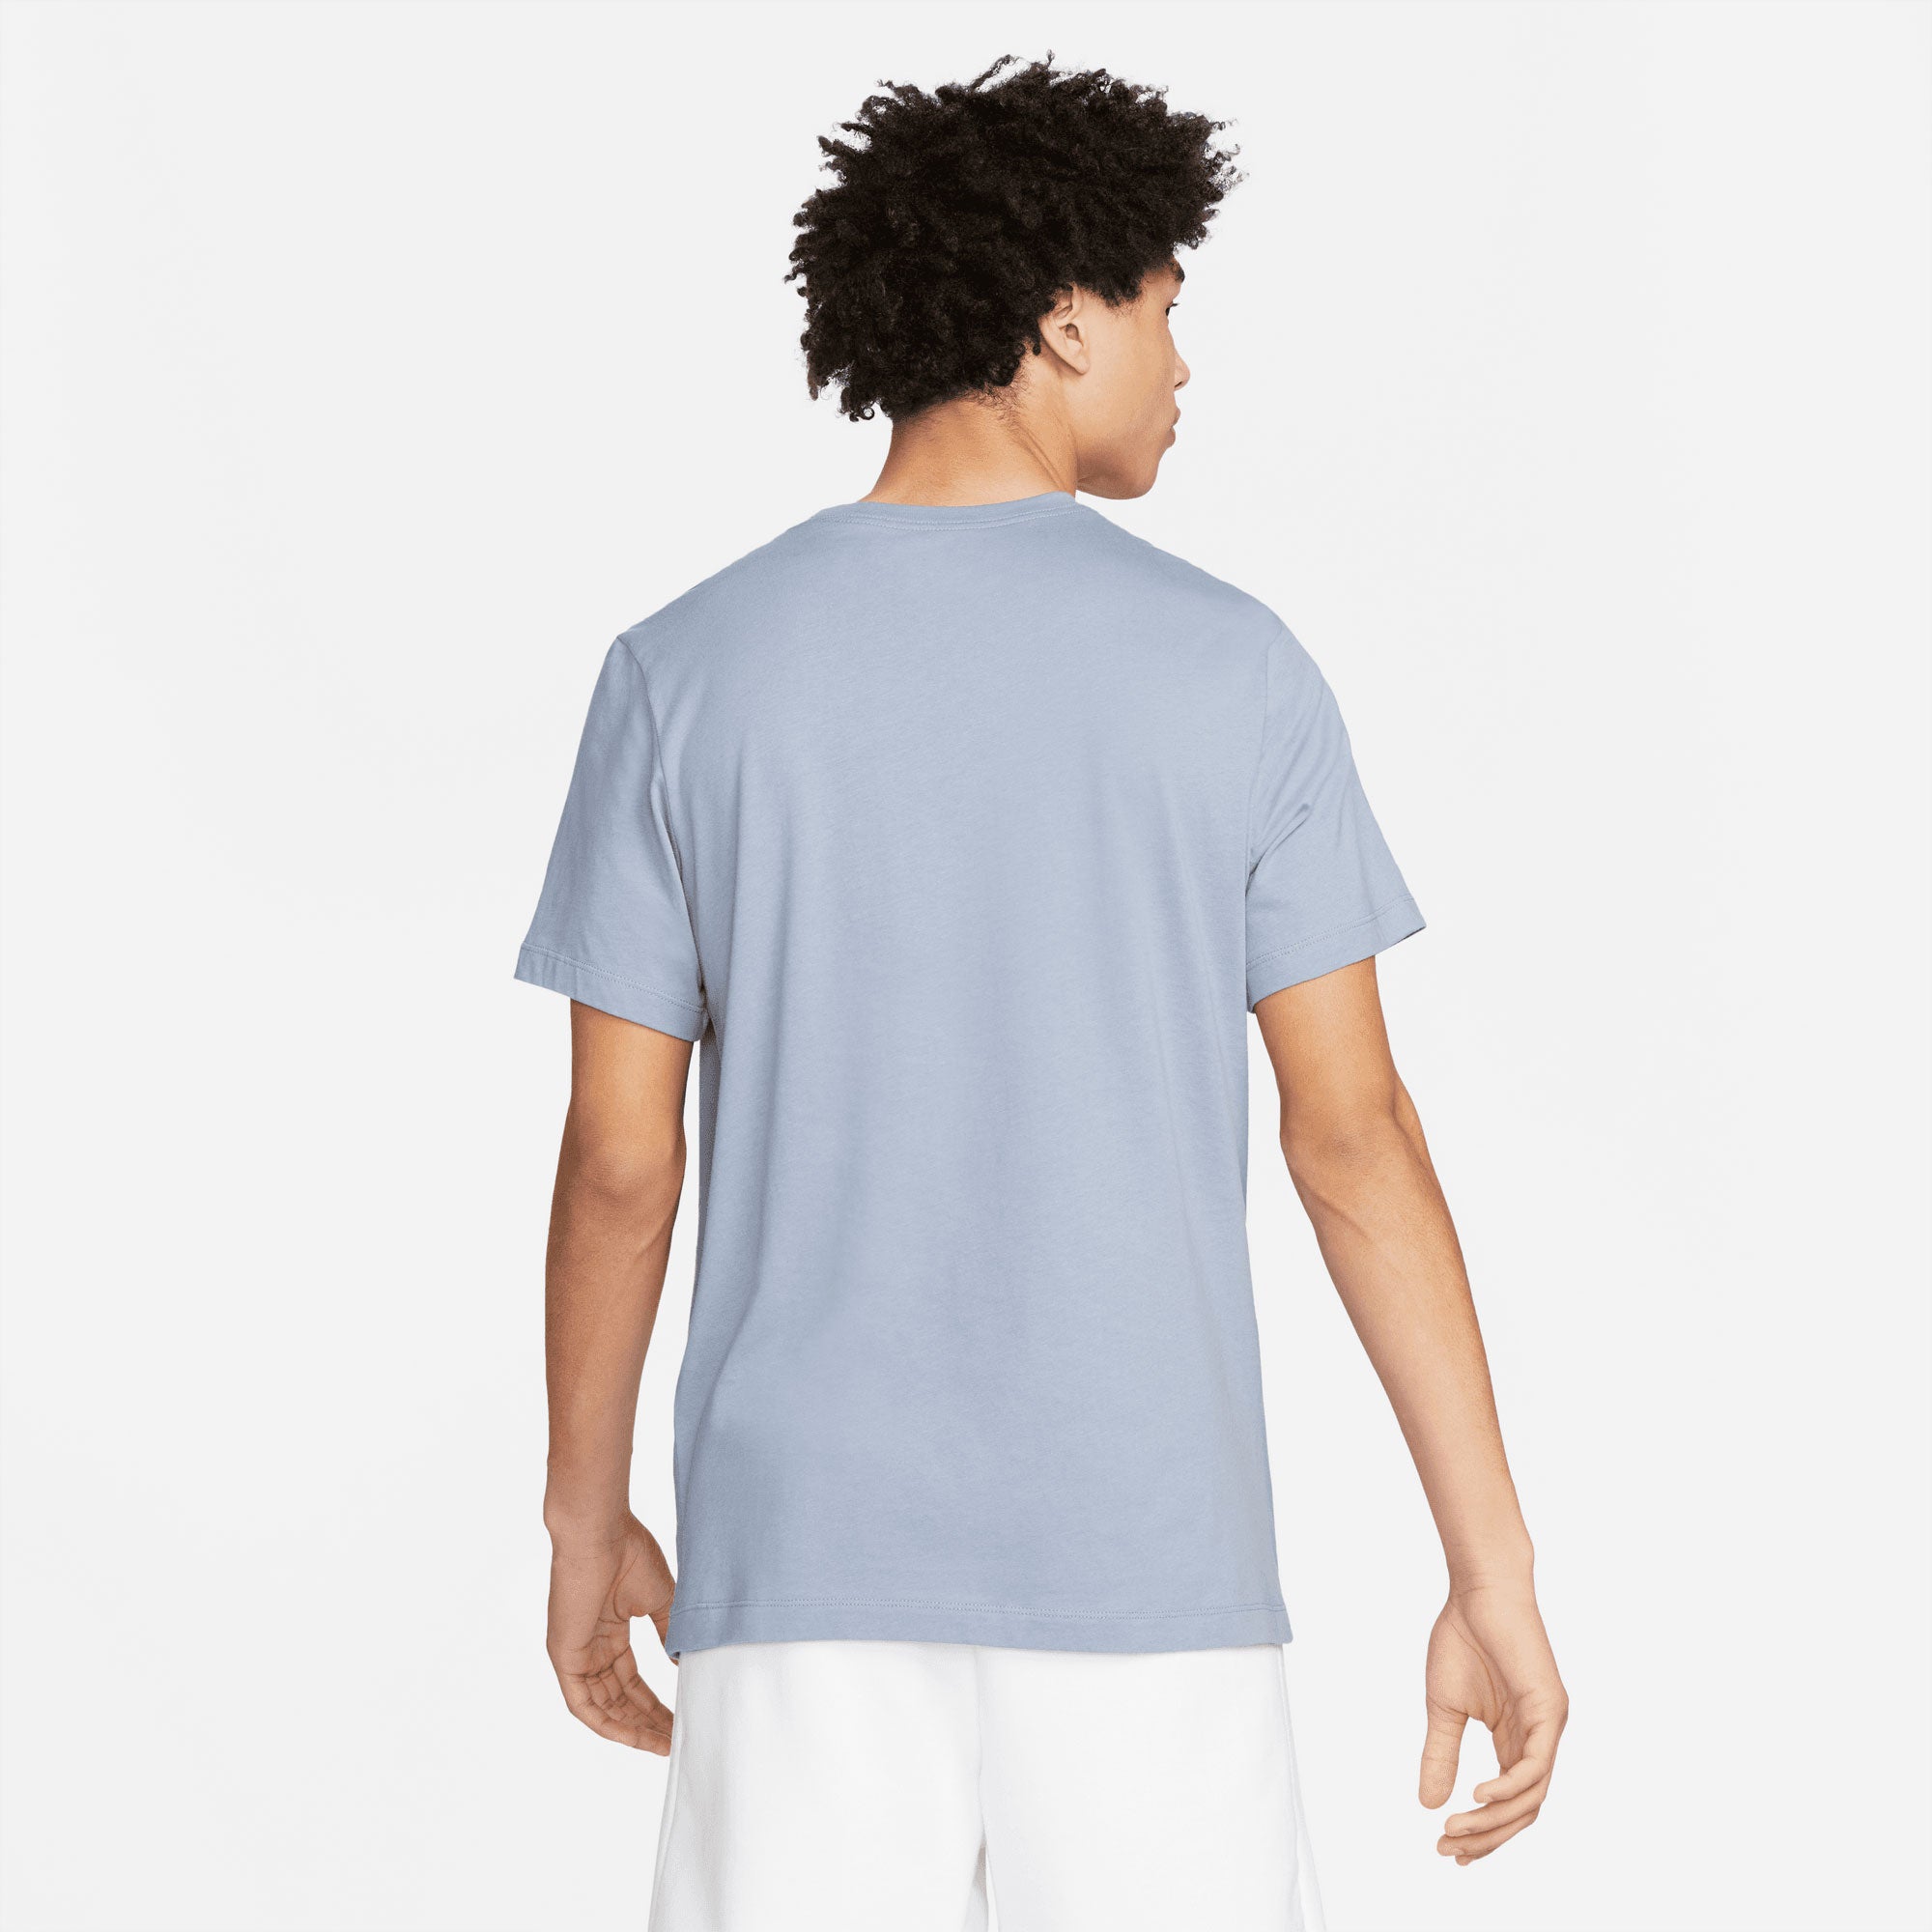 NikeCourt Garden Party Men's Tennis T-Shirt Blue (2)